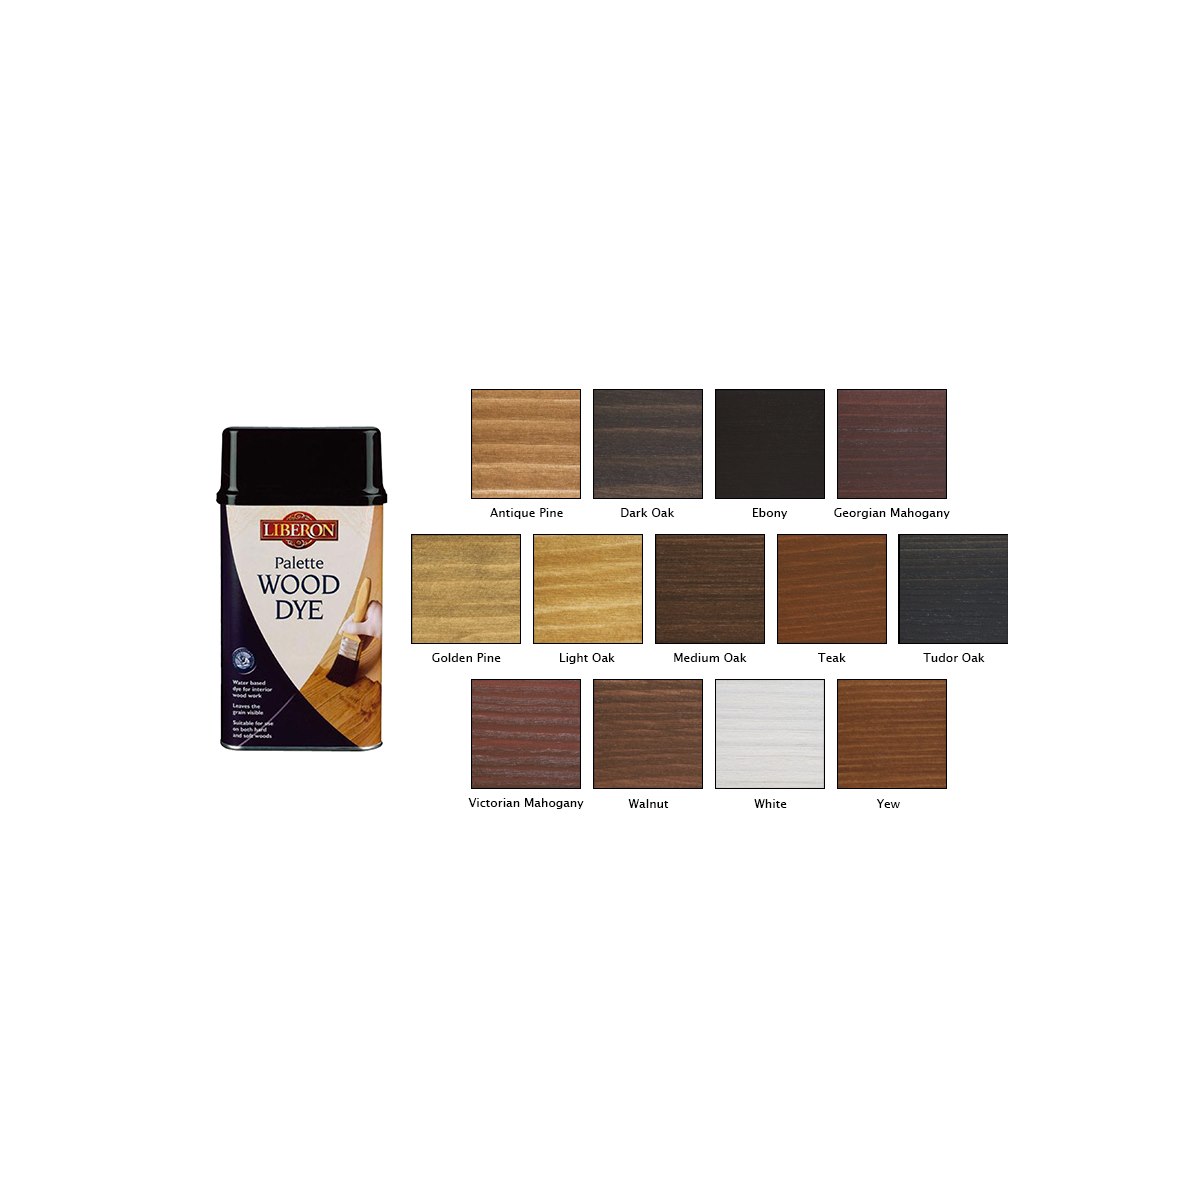 Where to Buy Liberon Palette Wood Dye